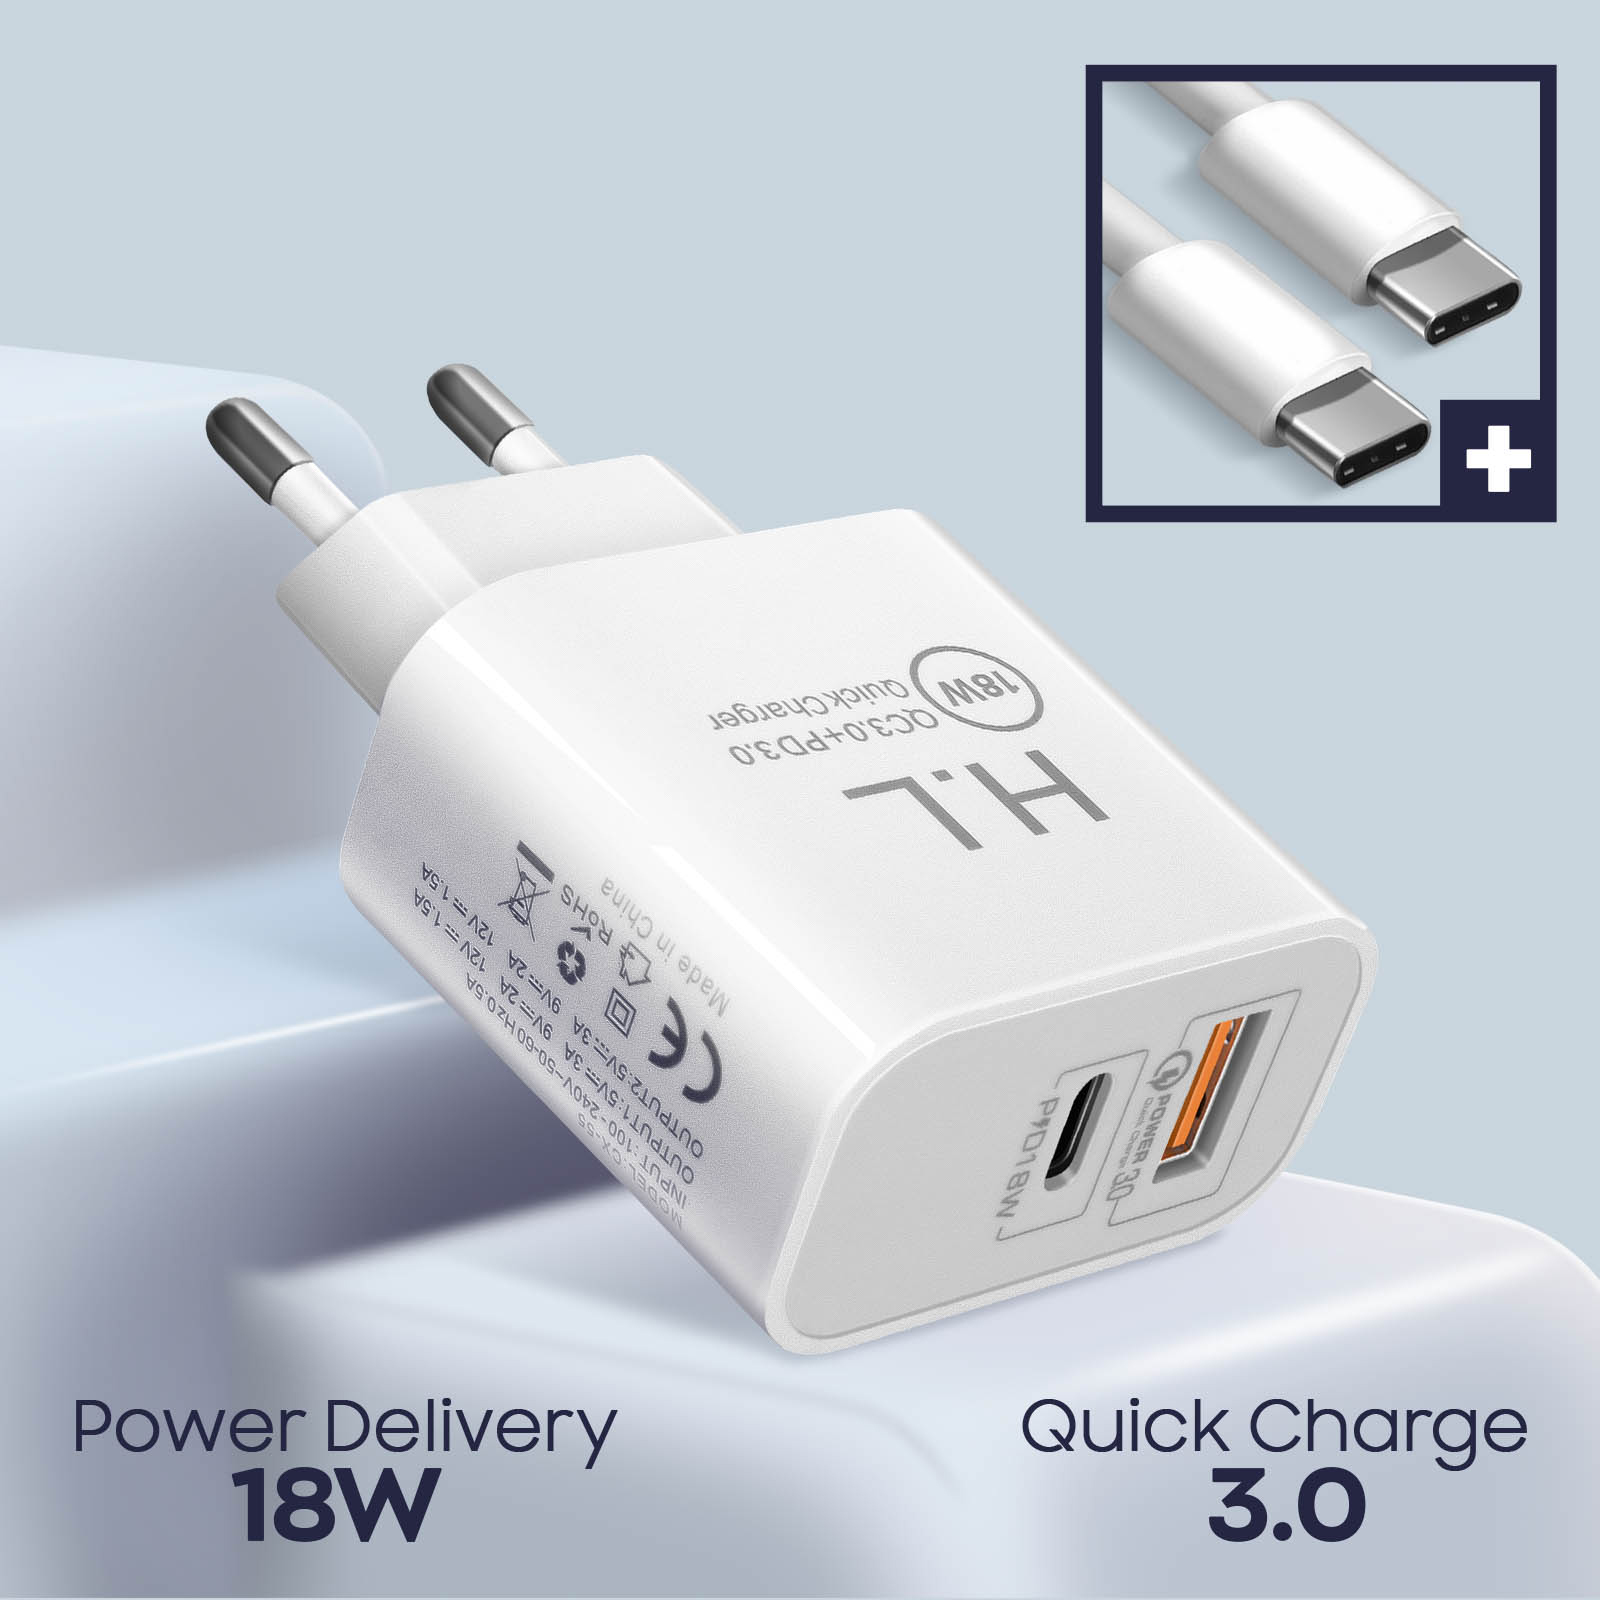 Chargeur + Câble USB C, Sortie Power Delivery USB C + USB Quick Charge 3.0  18W - Blanc - Français